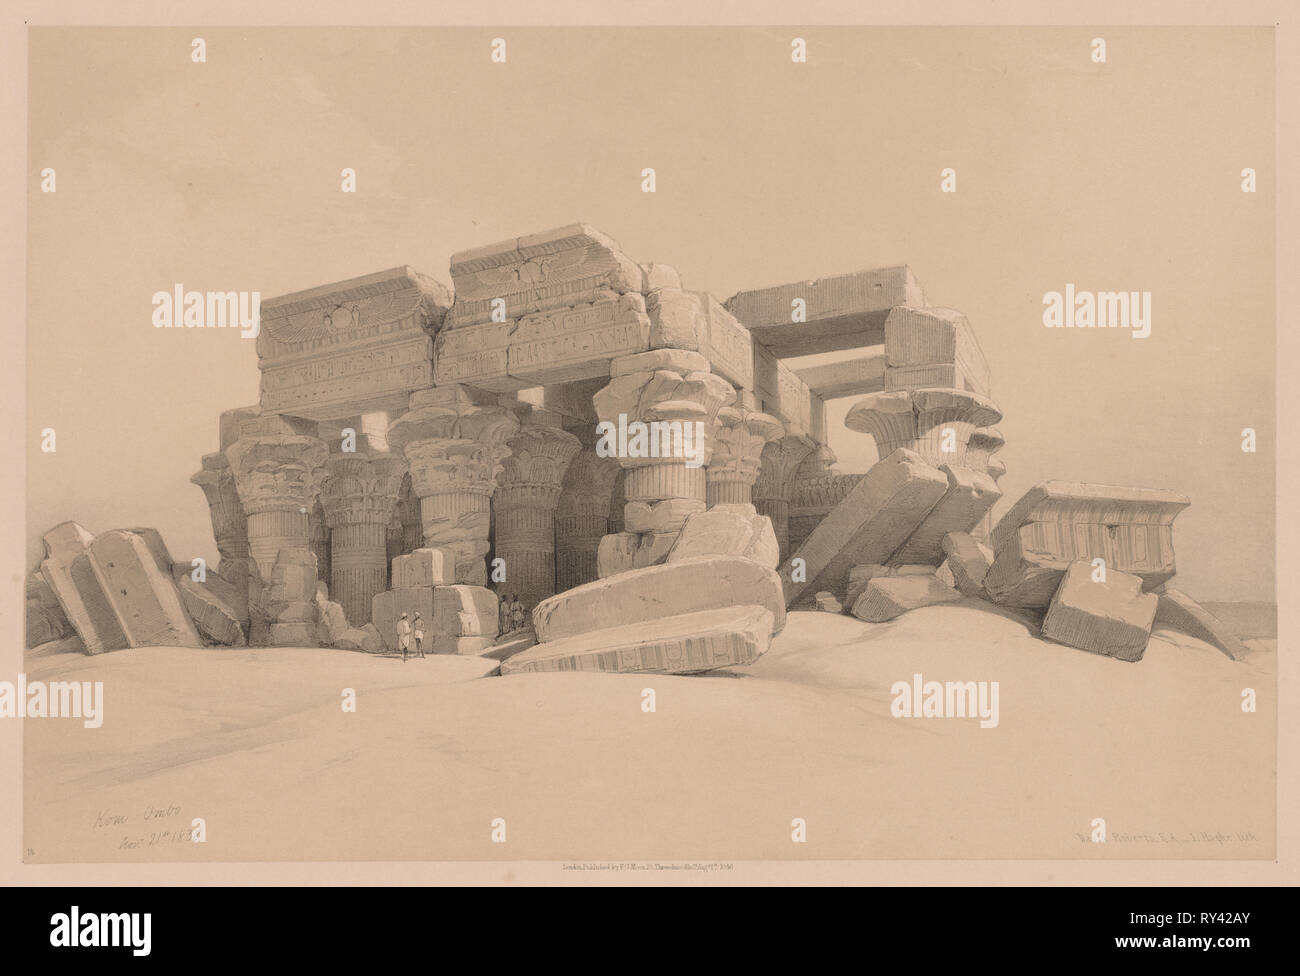 Ägypten und Nubien: Band I, Nr. 1, Nr. 2, bleibt der Vorhalle des Tempel von Kom Ombo, 1838. Louis Haghe (British, 1806-1885). Farblithographie Stockfoto